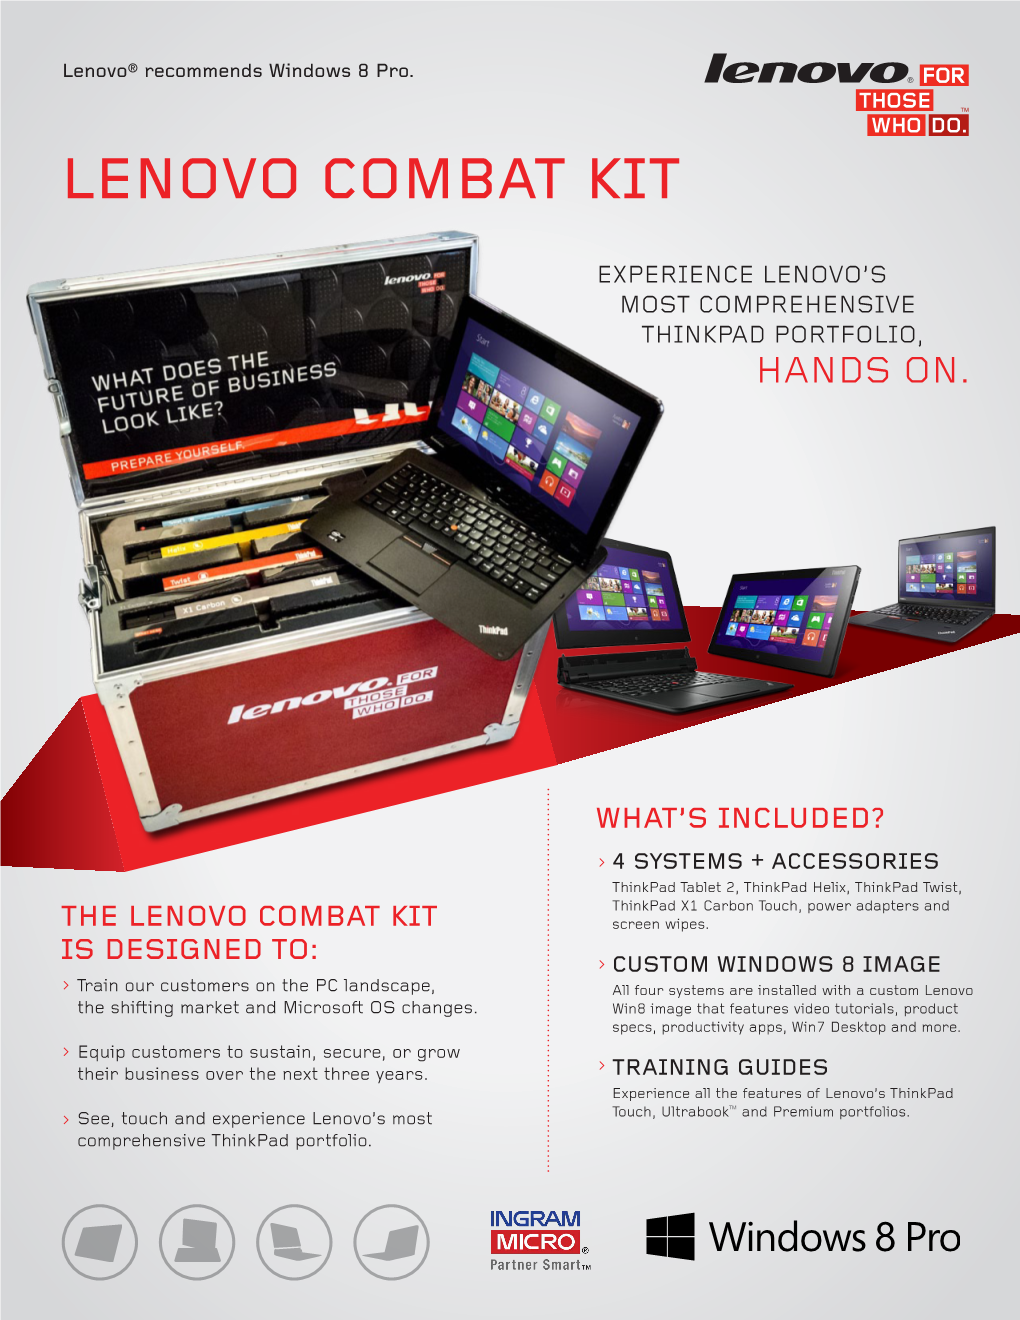 Lenovo Combat Kit